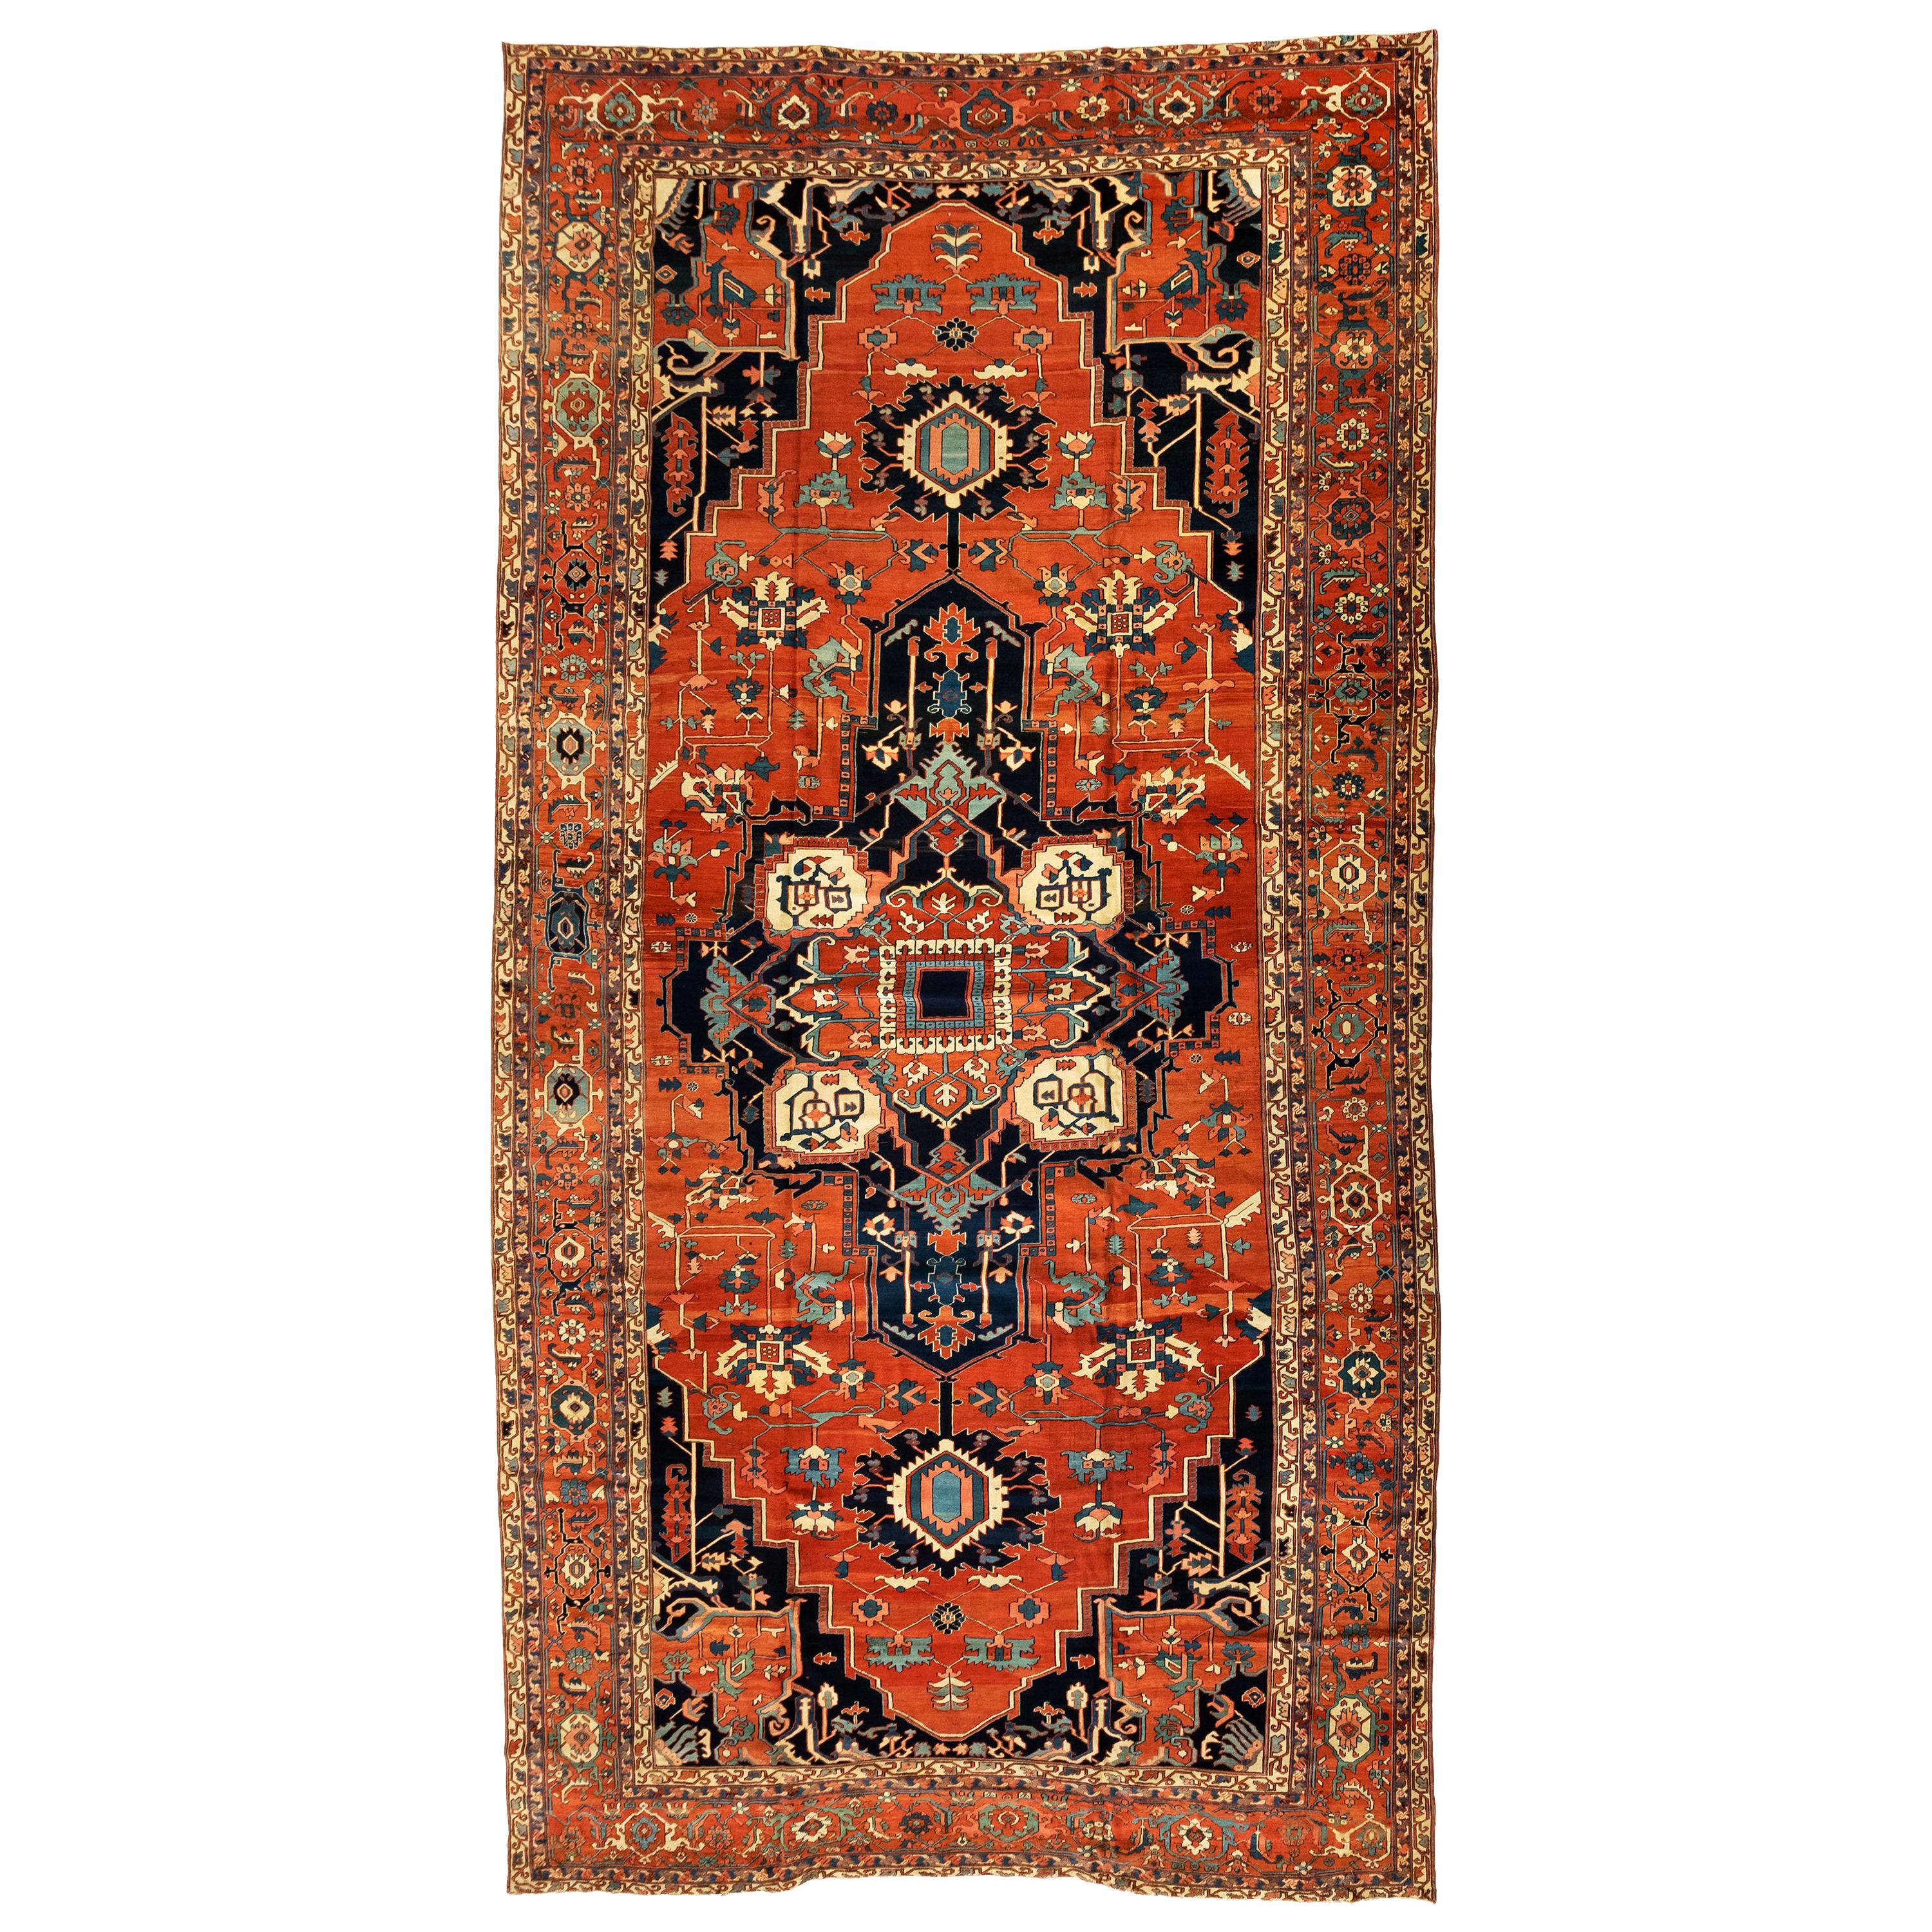 Antiker persischer Serapi-Teppich in Rost, Elfenbein und Marineblau, um 1880-1900